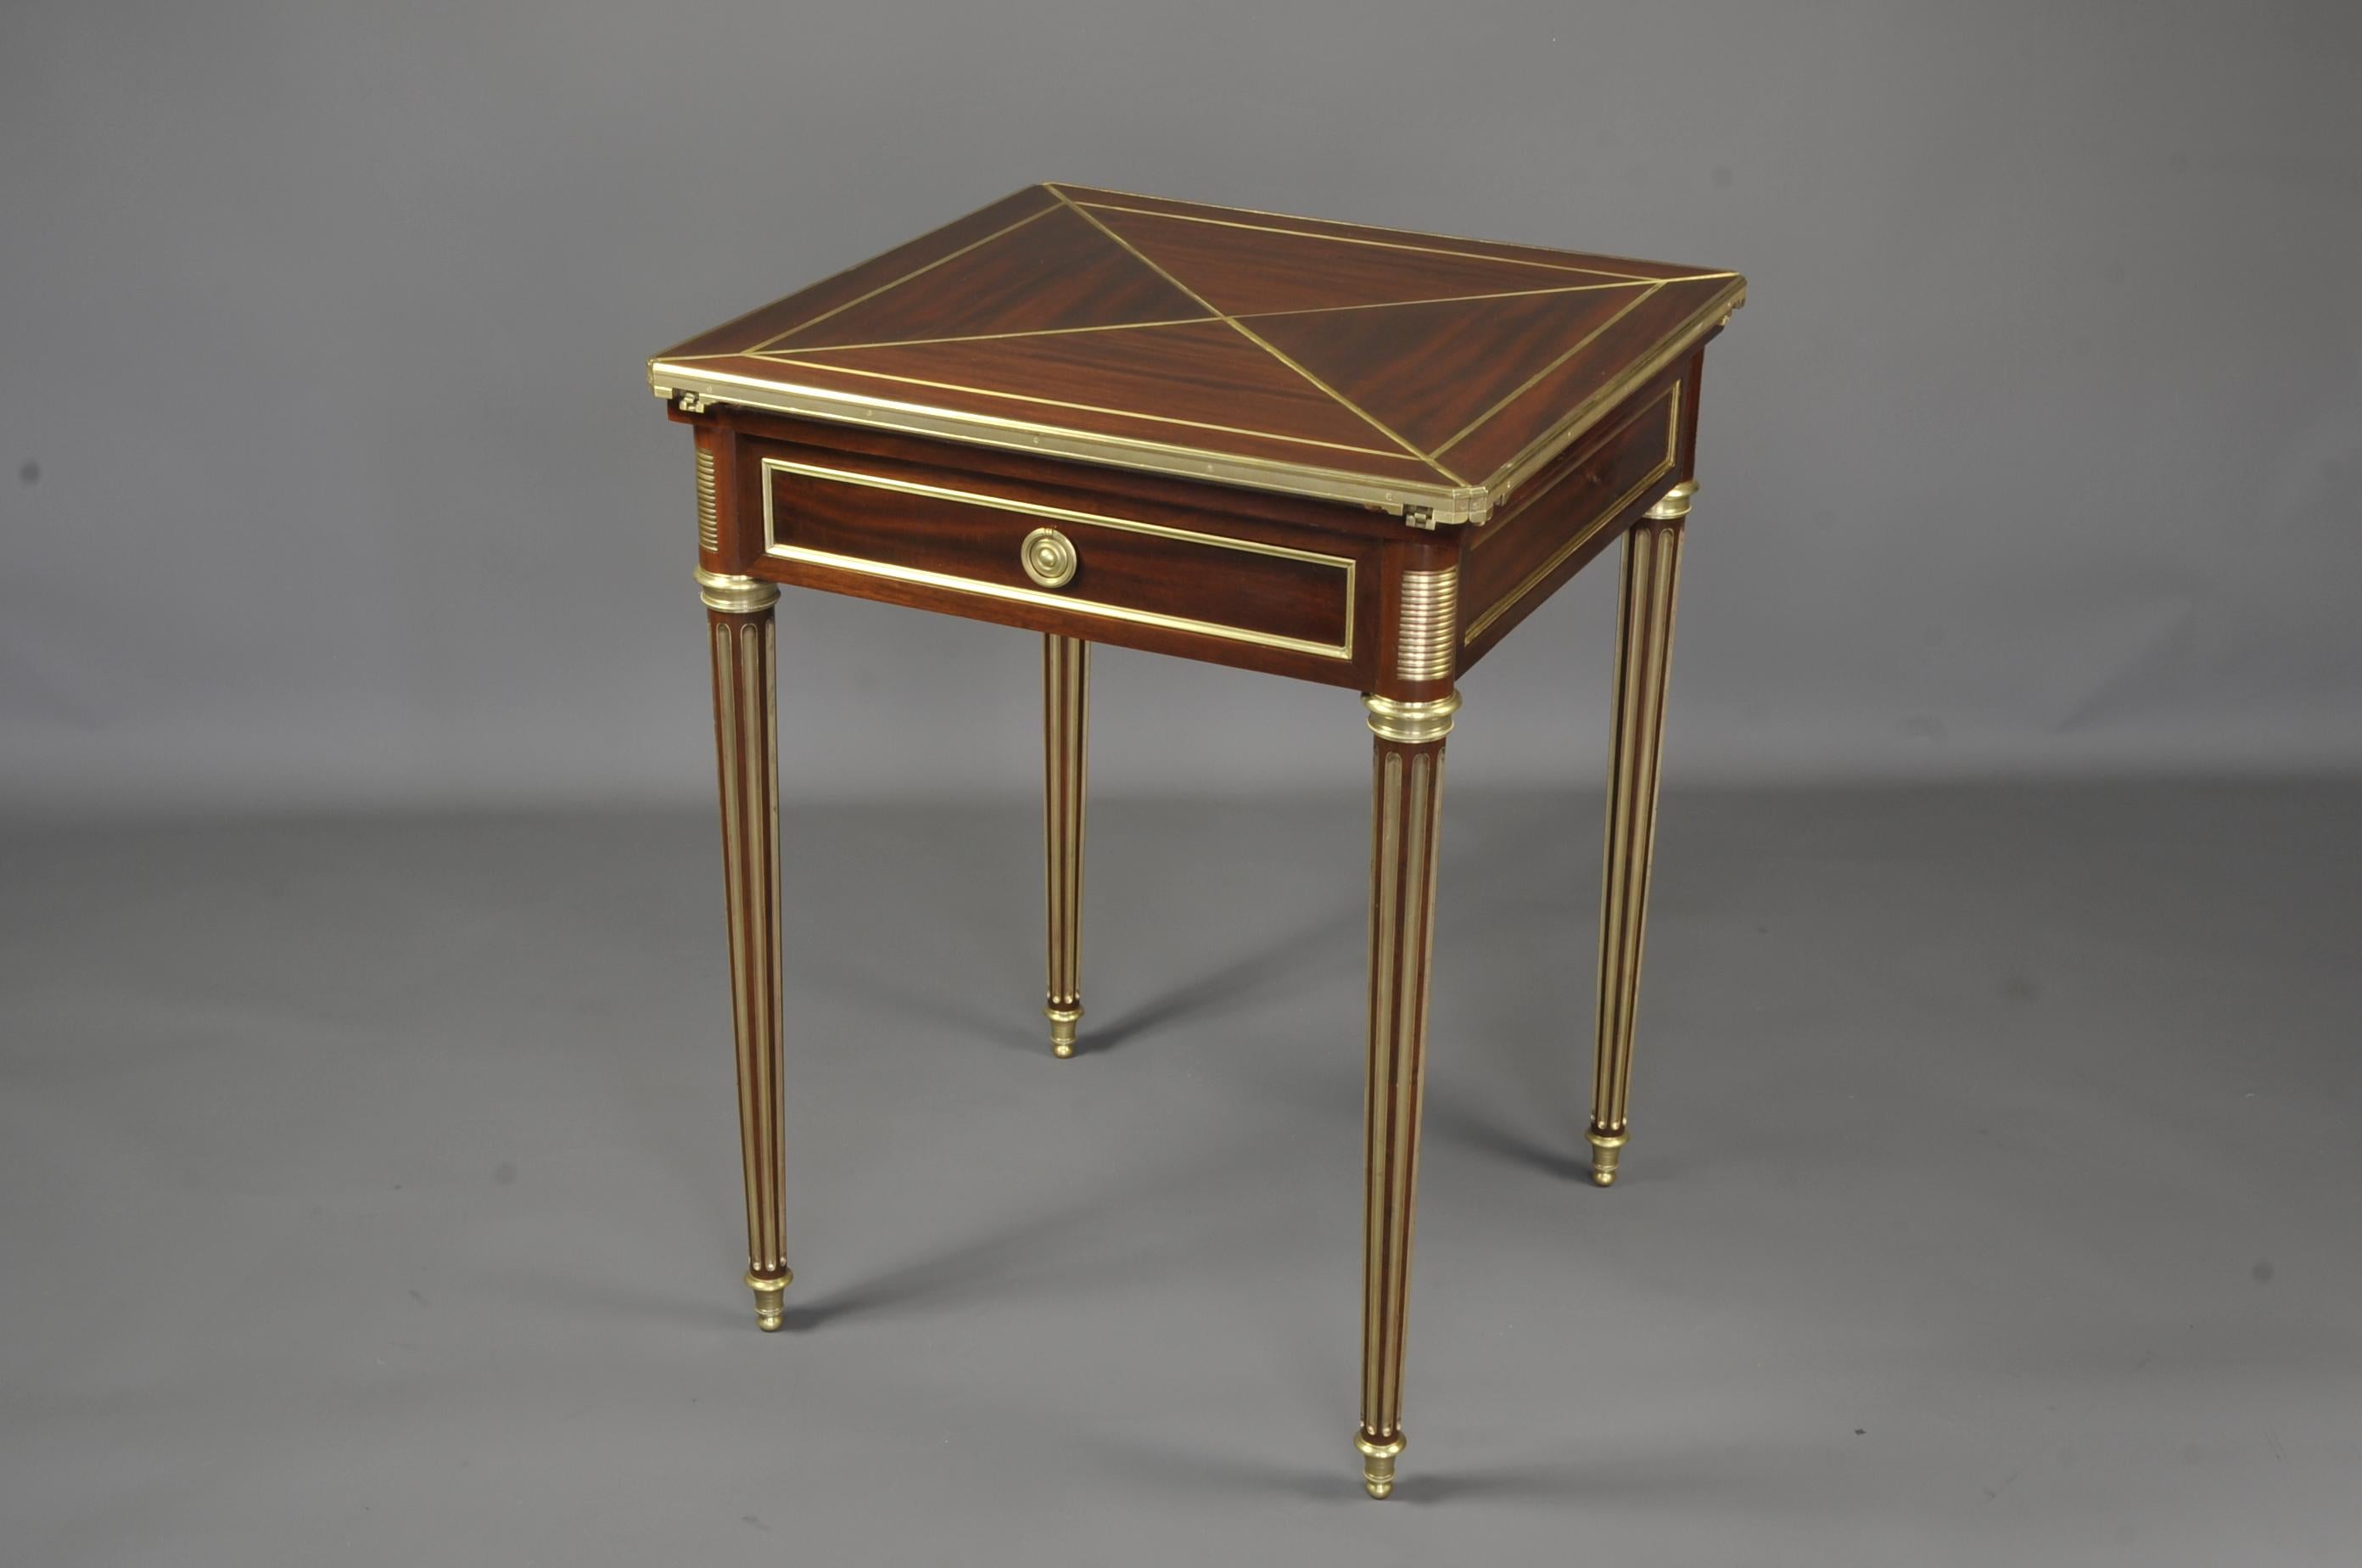 Paul Sormani (1817-1866)
Sehr eleganter Spieltisch aus Mahagoni und Mahagoni-Furnier mit einer sogenannten 